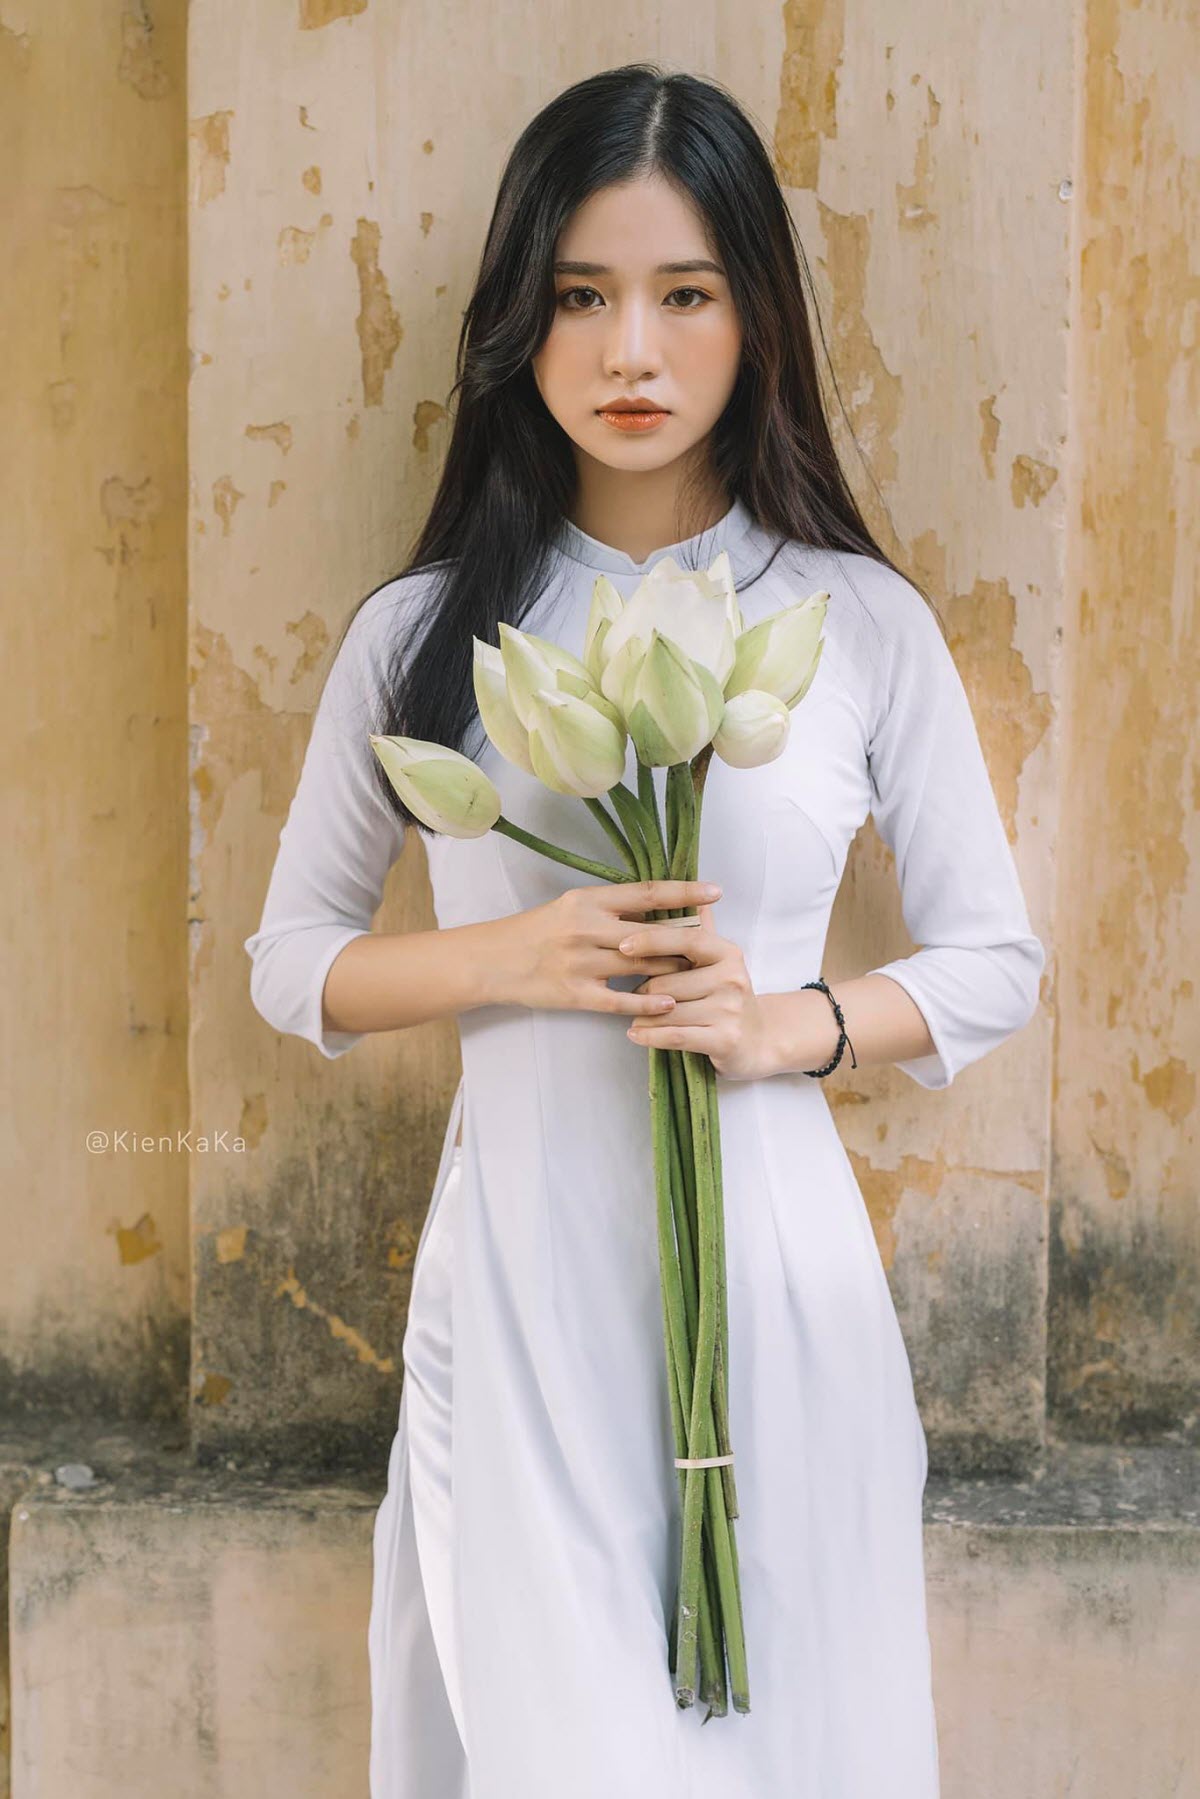 Nguyễn Trọng Hùng lần đầu công khai bạn gái xinh như mộng hình ảnh